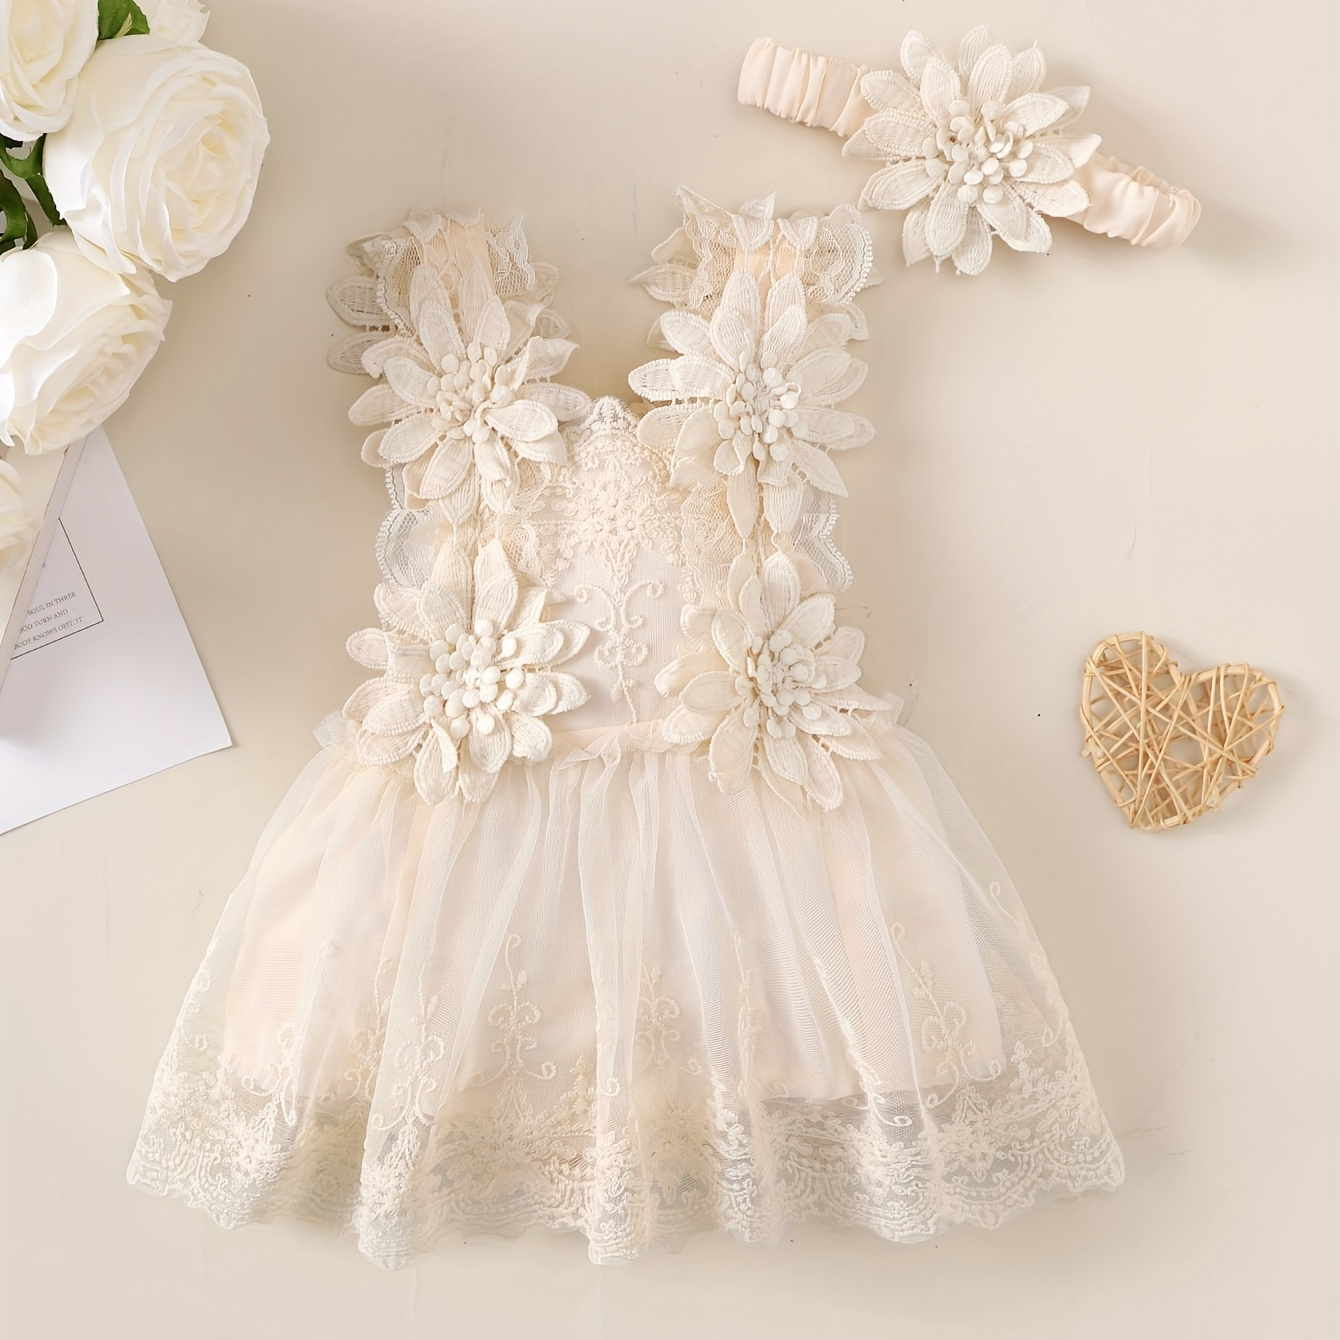 

Baby's Elegant Flower Applique Sleeveless Mesh Dress & Hairband, Infant & Toddler Girl's Clothing For Summer Party, As Gift